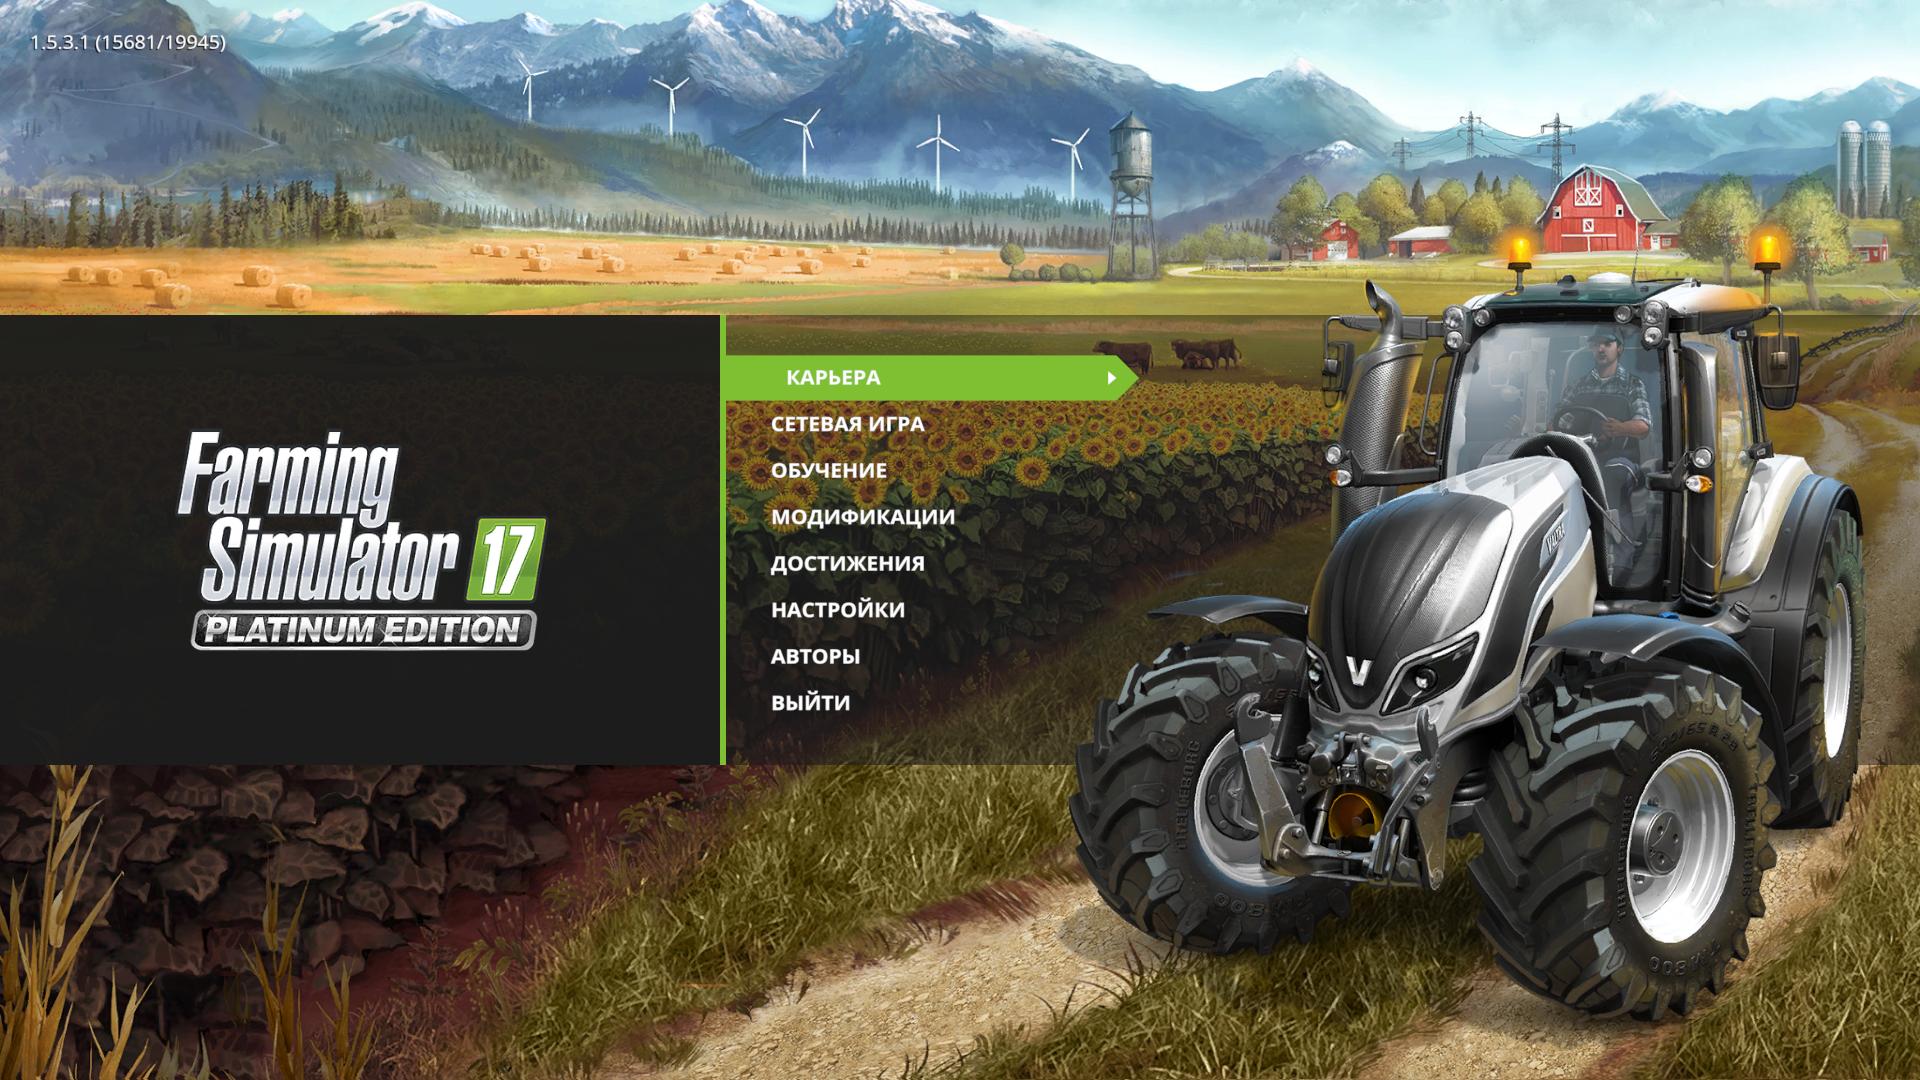 Скриншот Farming Simulator 17: Platinum Edition [v 1.5.3.1 + 5 DLC] (2016) PC